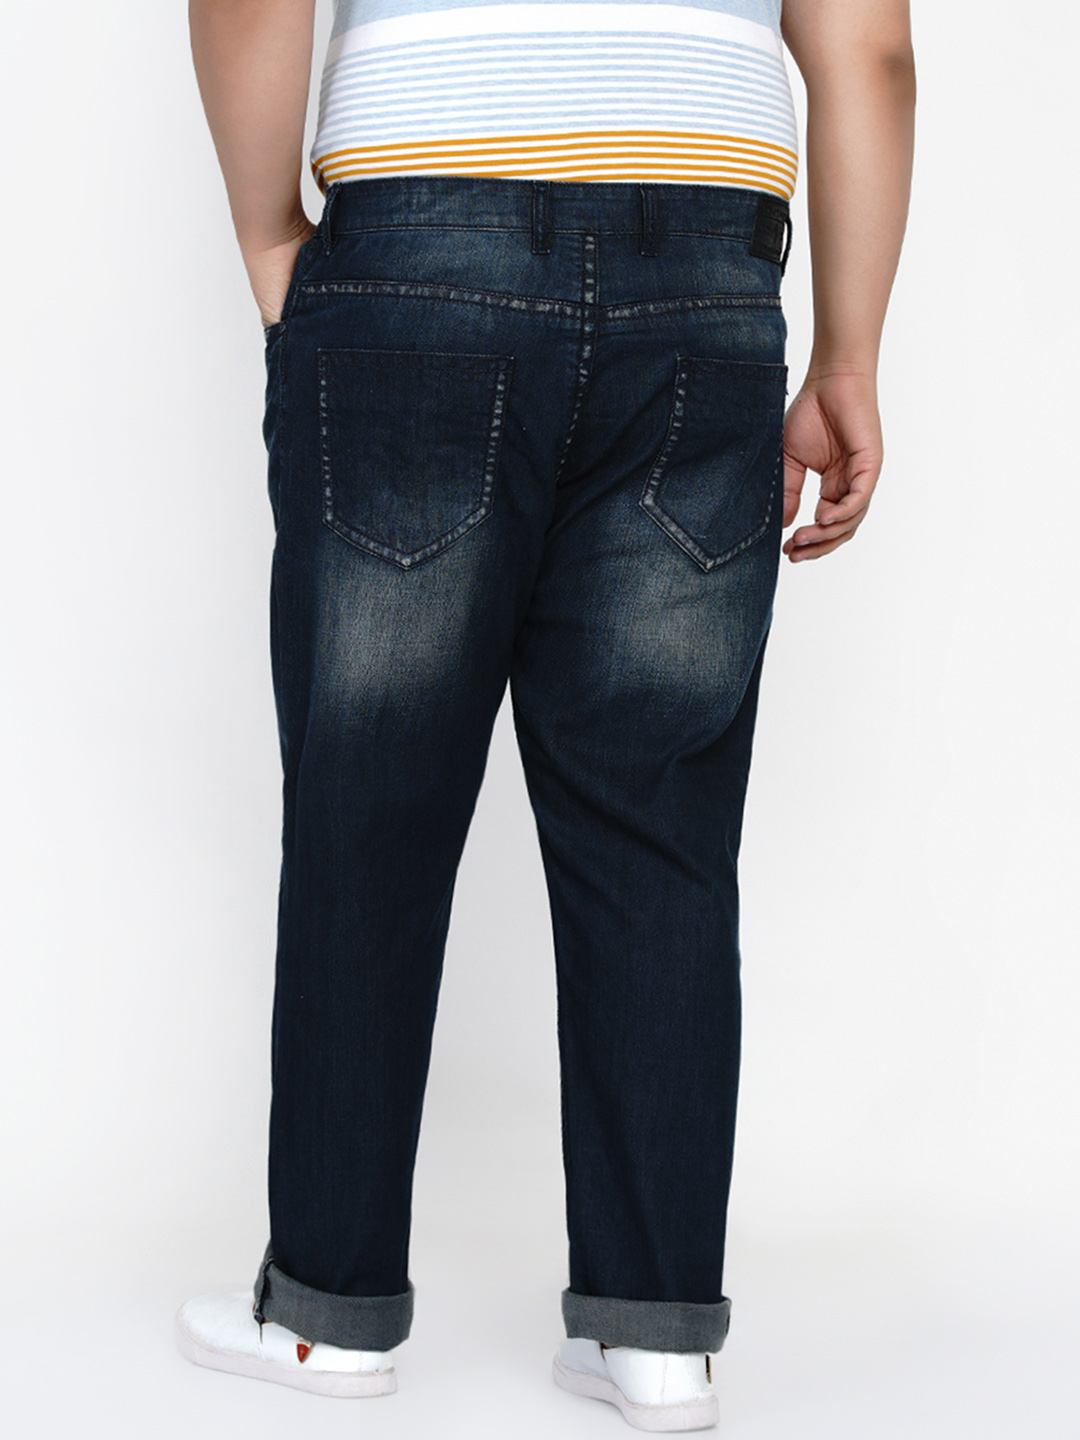 bottomwear/jeans/JPJ2560/jpj2560-5.jpg